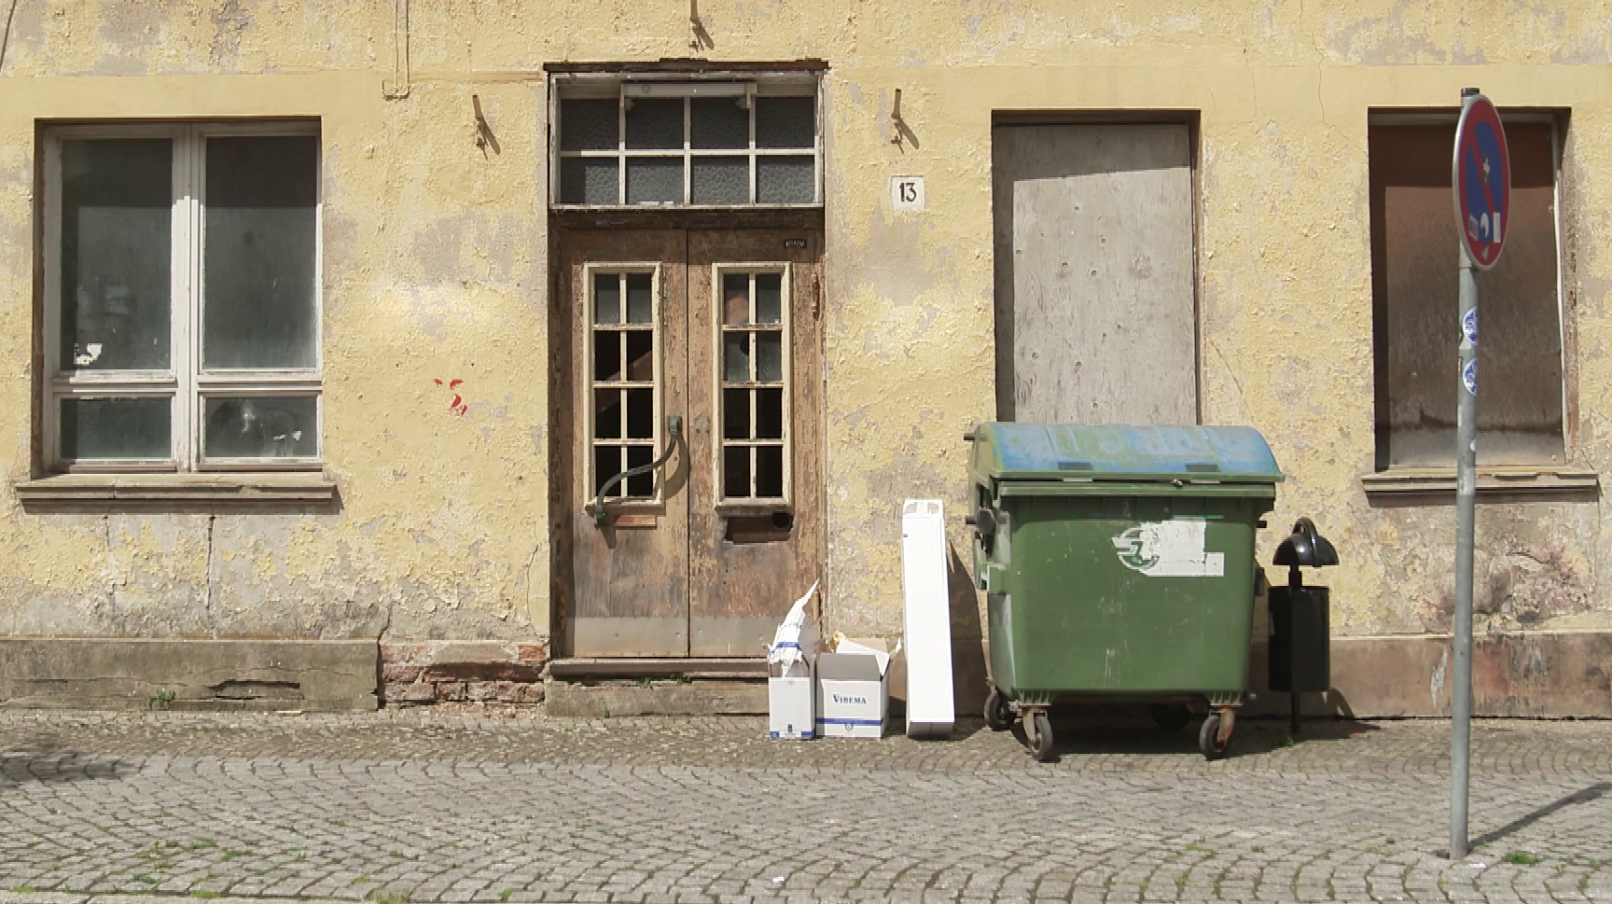 Eine alte Hauswand mit schmutzigen und abgedeckten Fenstern. Davor stehen zwei Mülltonnen, einige Kartons und ein Straßenschild.